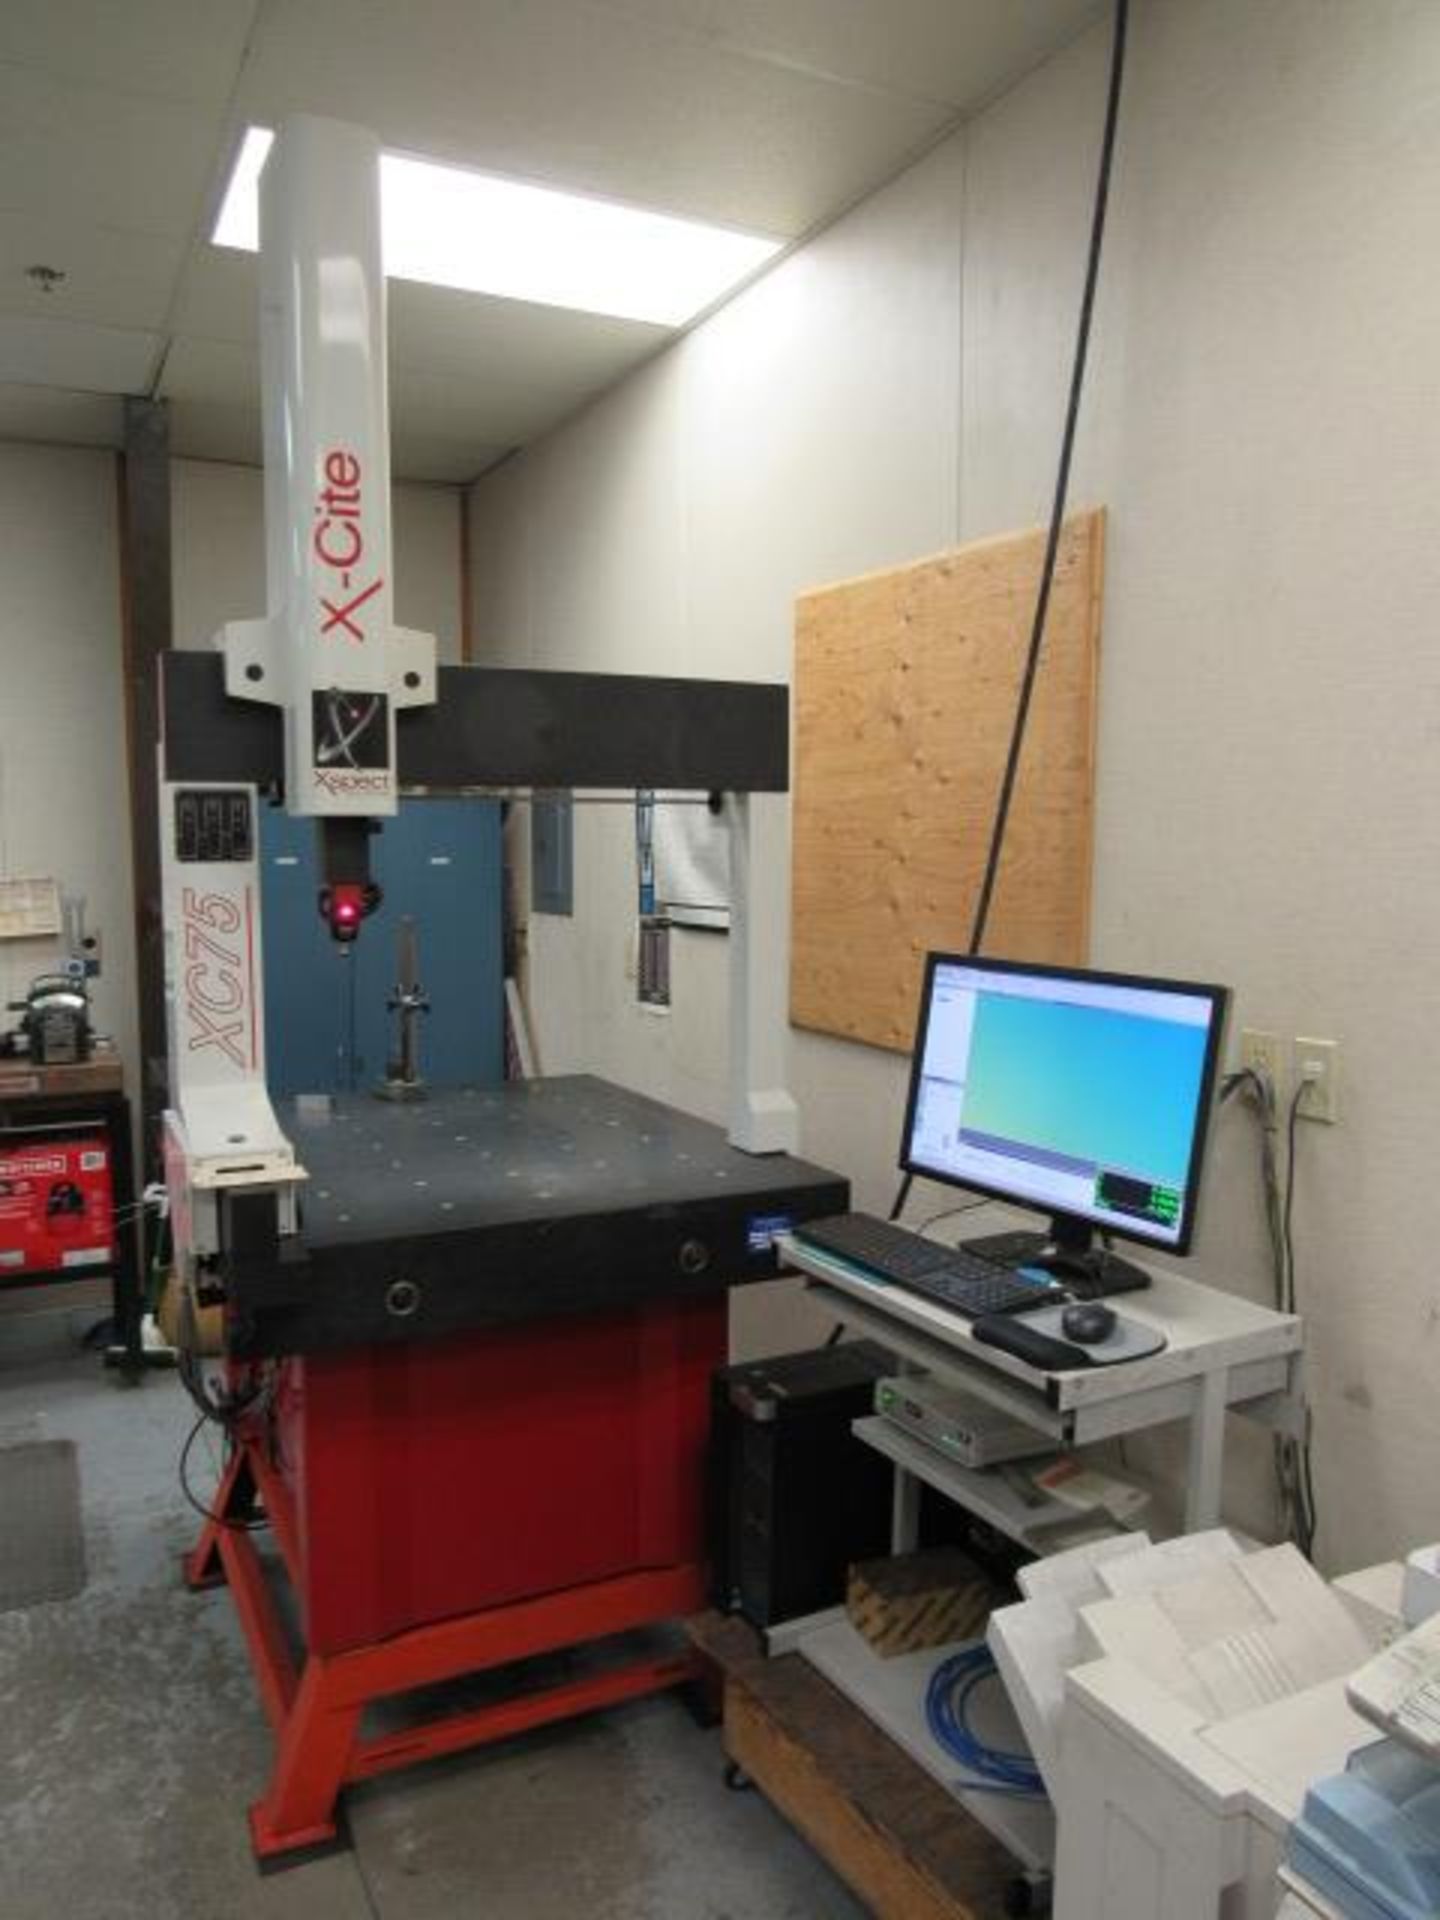 X-Cite Coordinate Measuring Machine